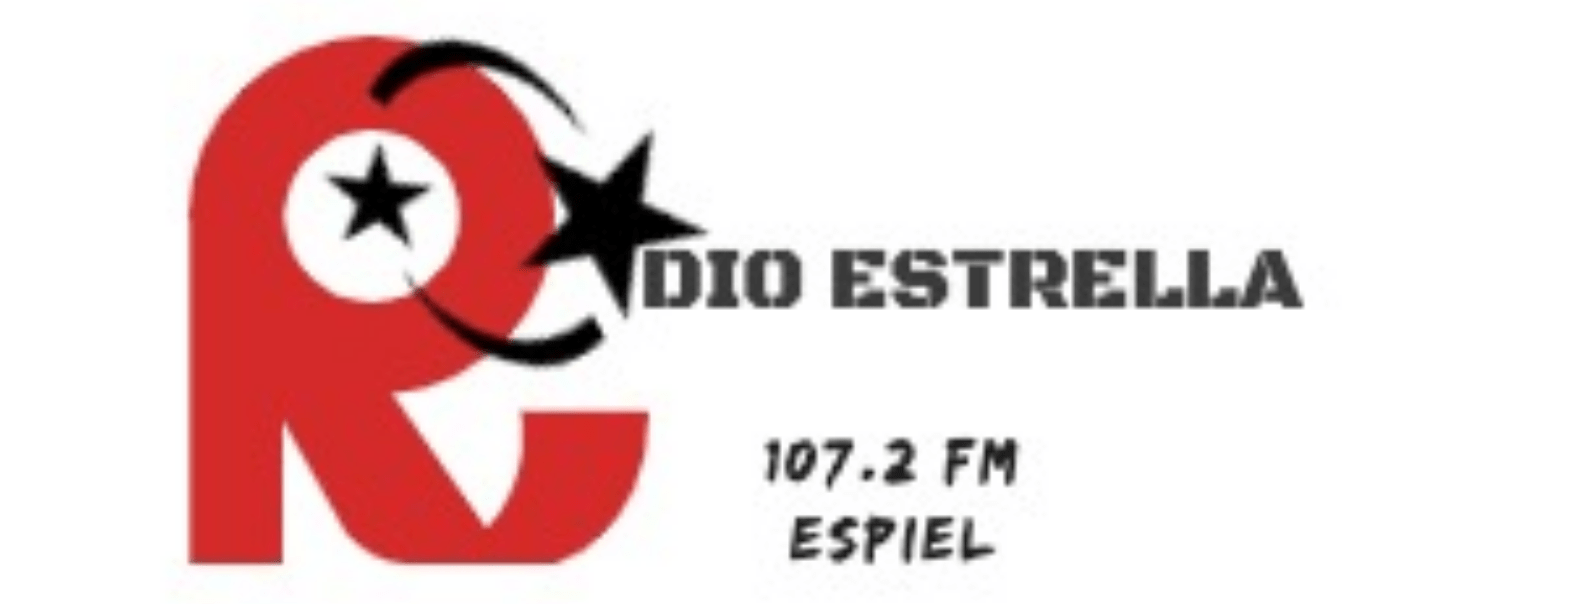 Logo y enlace a Radio Estrella